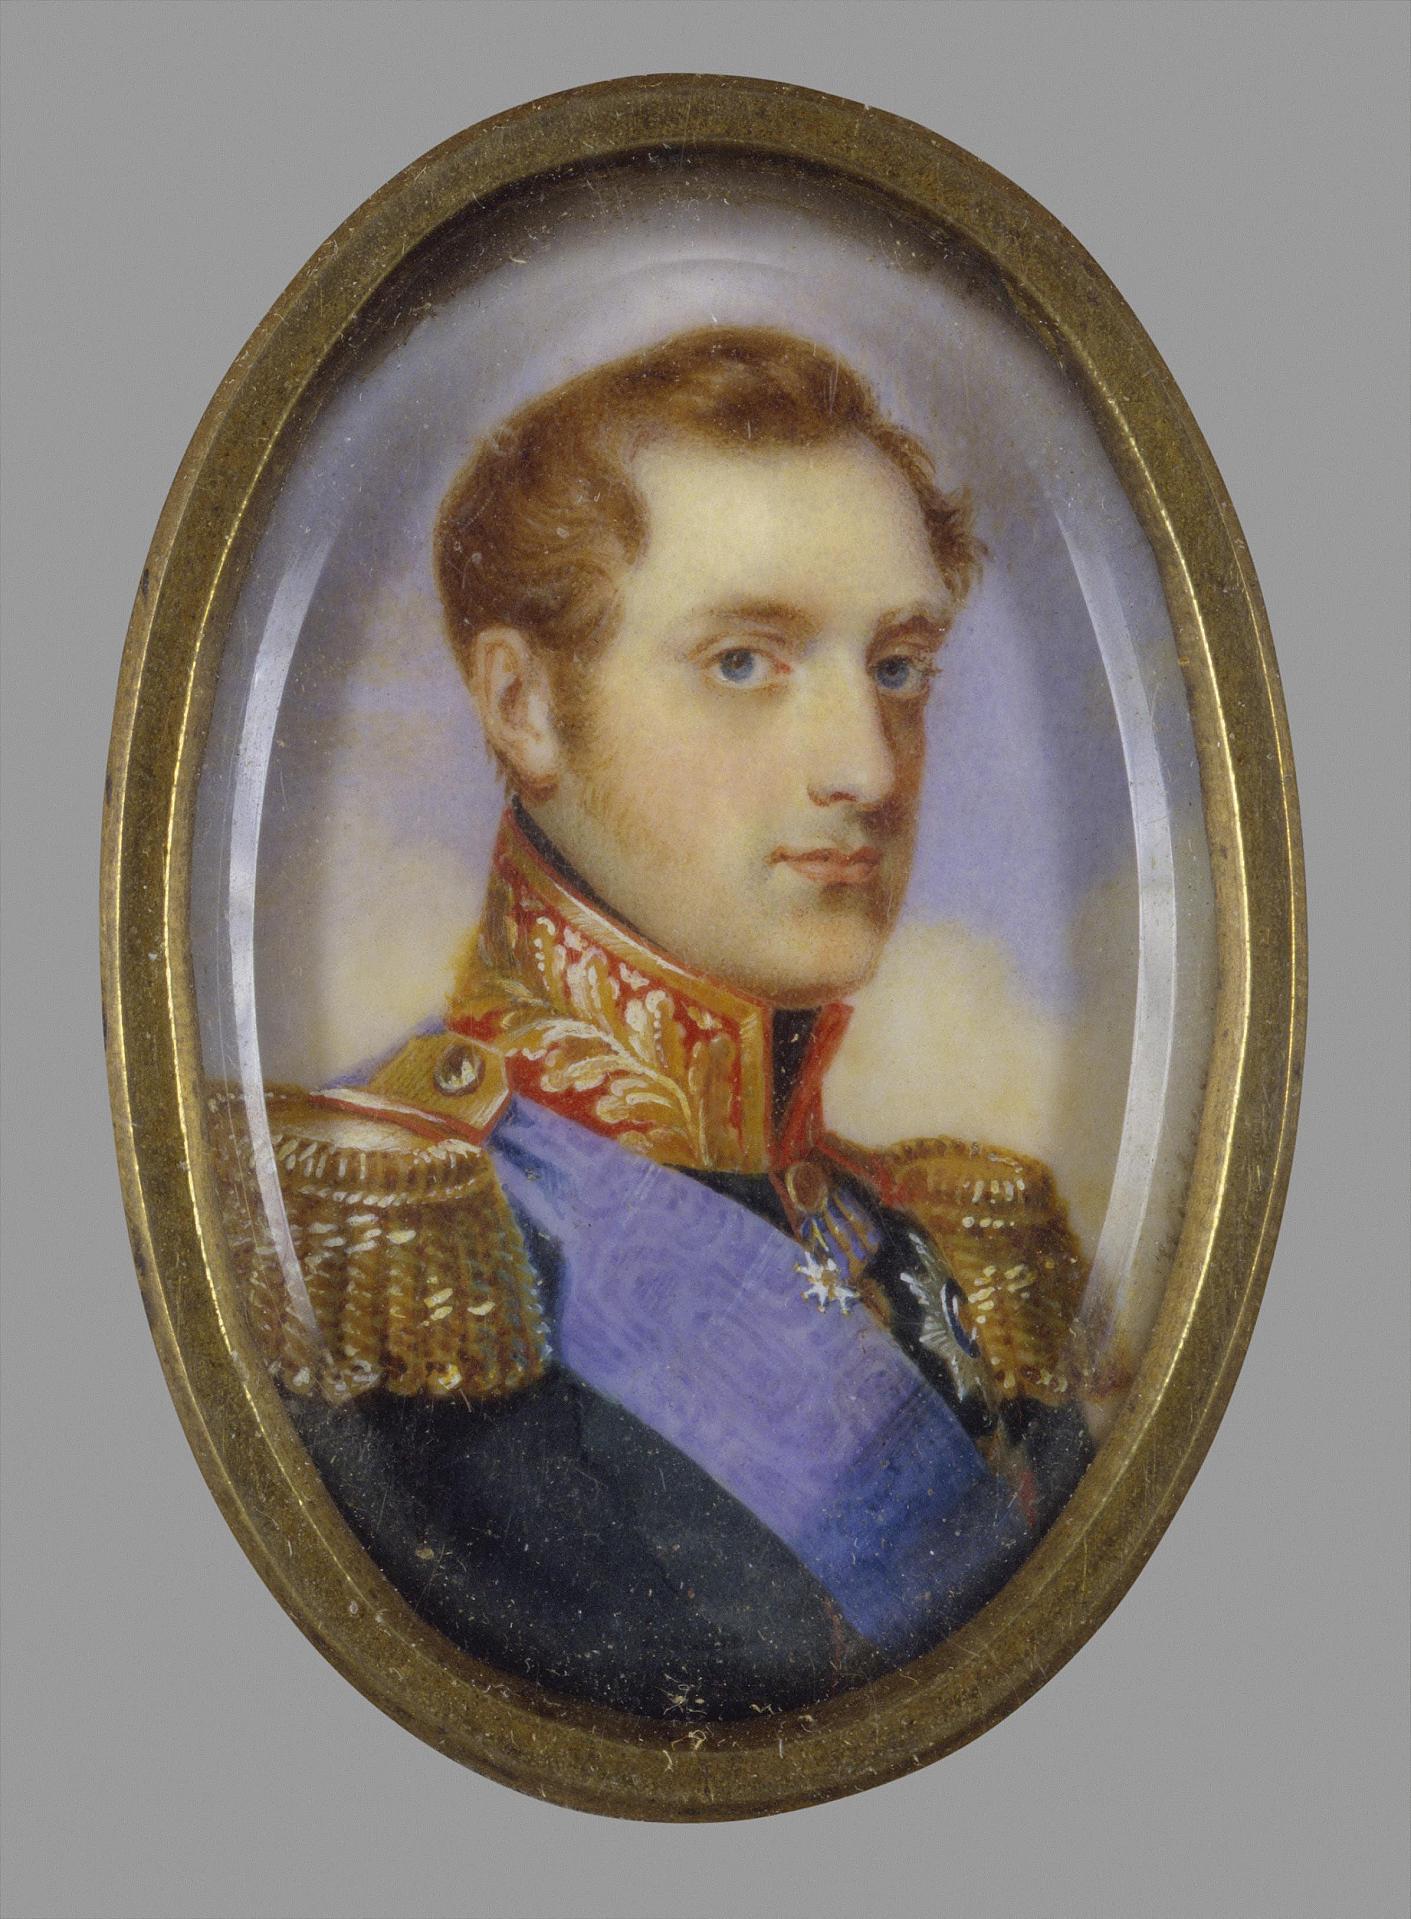 Иван Андреевич Винберг? "Портрет императора Николая I". 1826-1830. Эрмитаж, Санкт-Петербург.